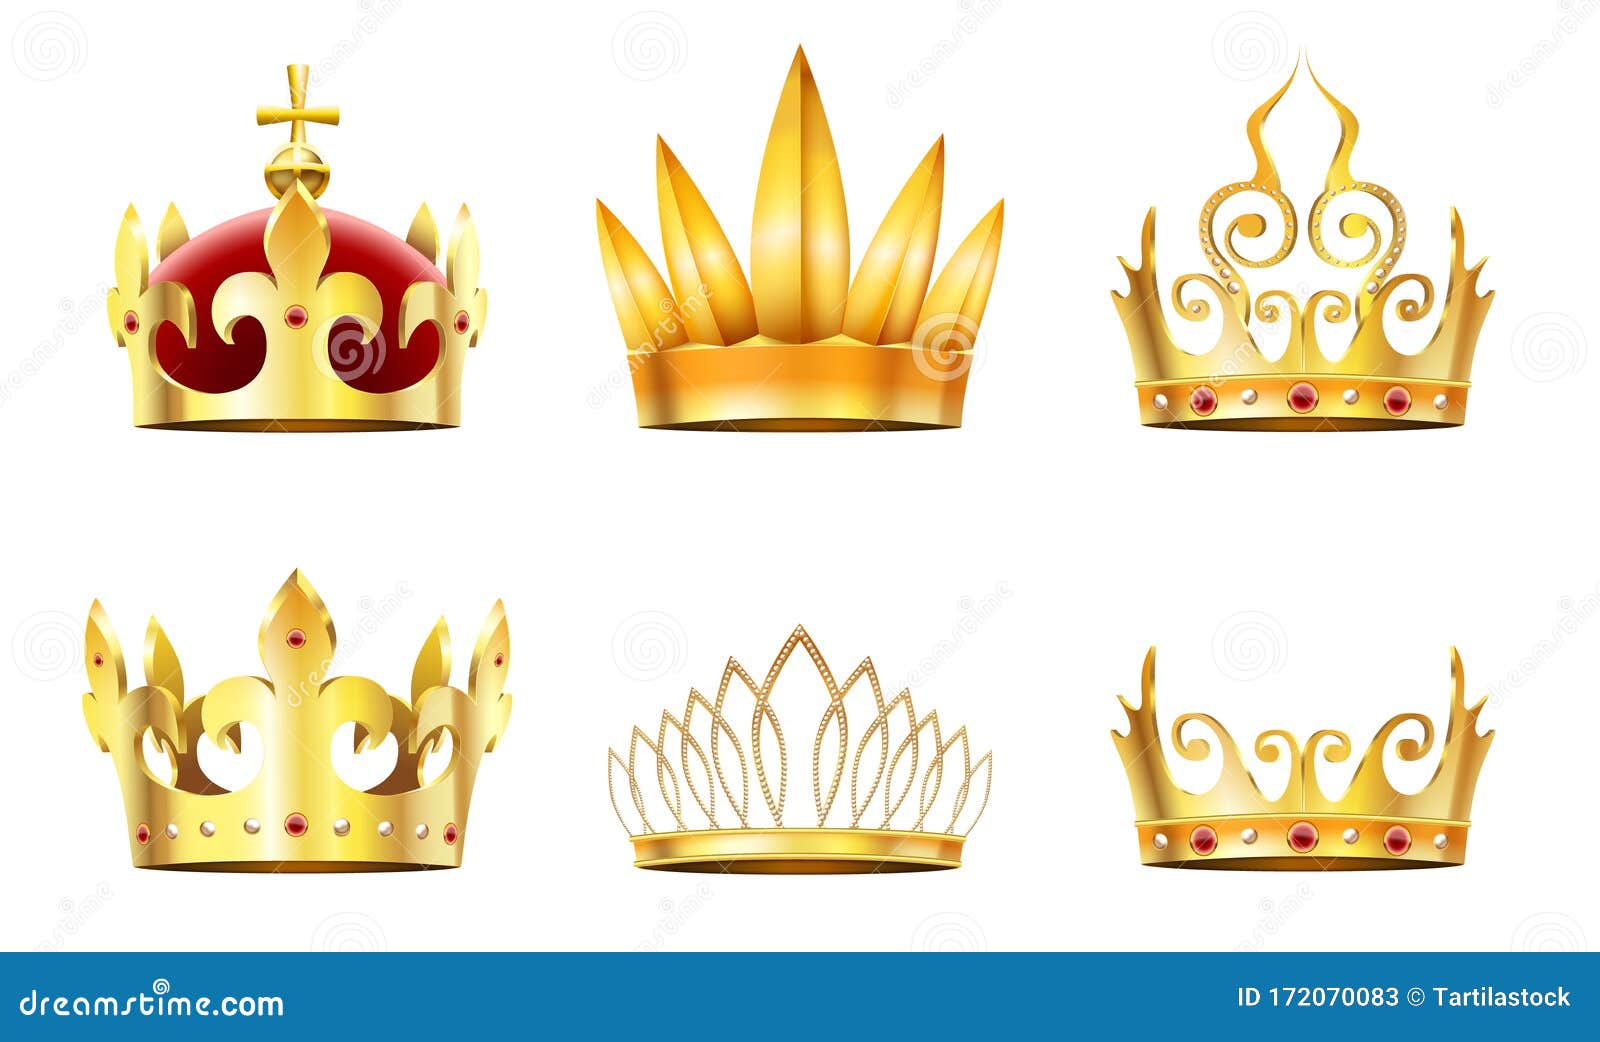 真实的皇冠与田冠金皇冠 皇后王冠和君主皇冠矢量图集向量例证 插画包括有国王 女皇 花冠 国君